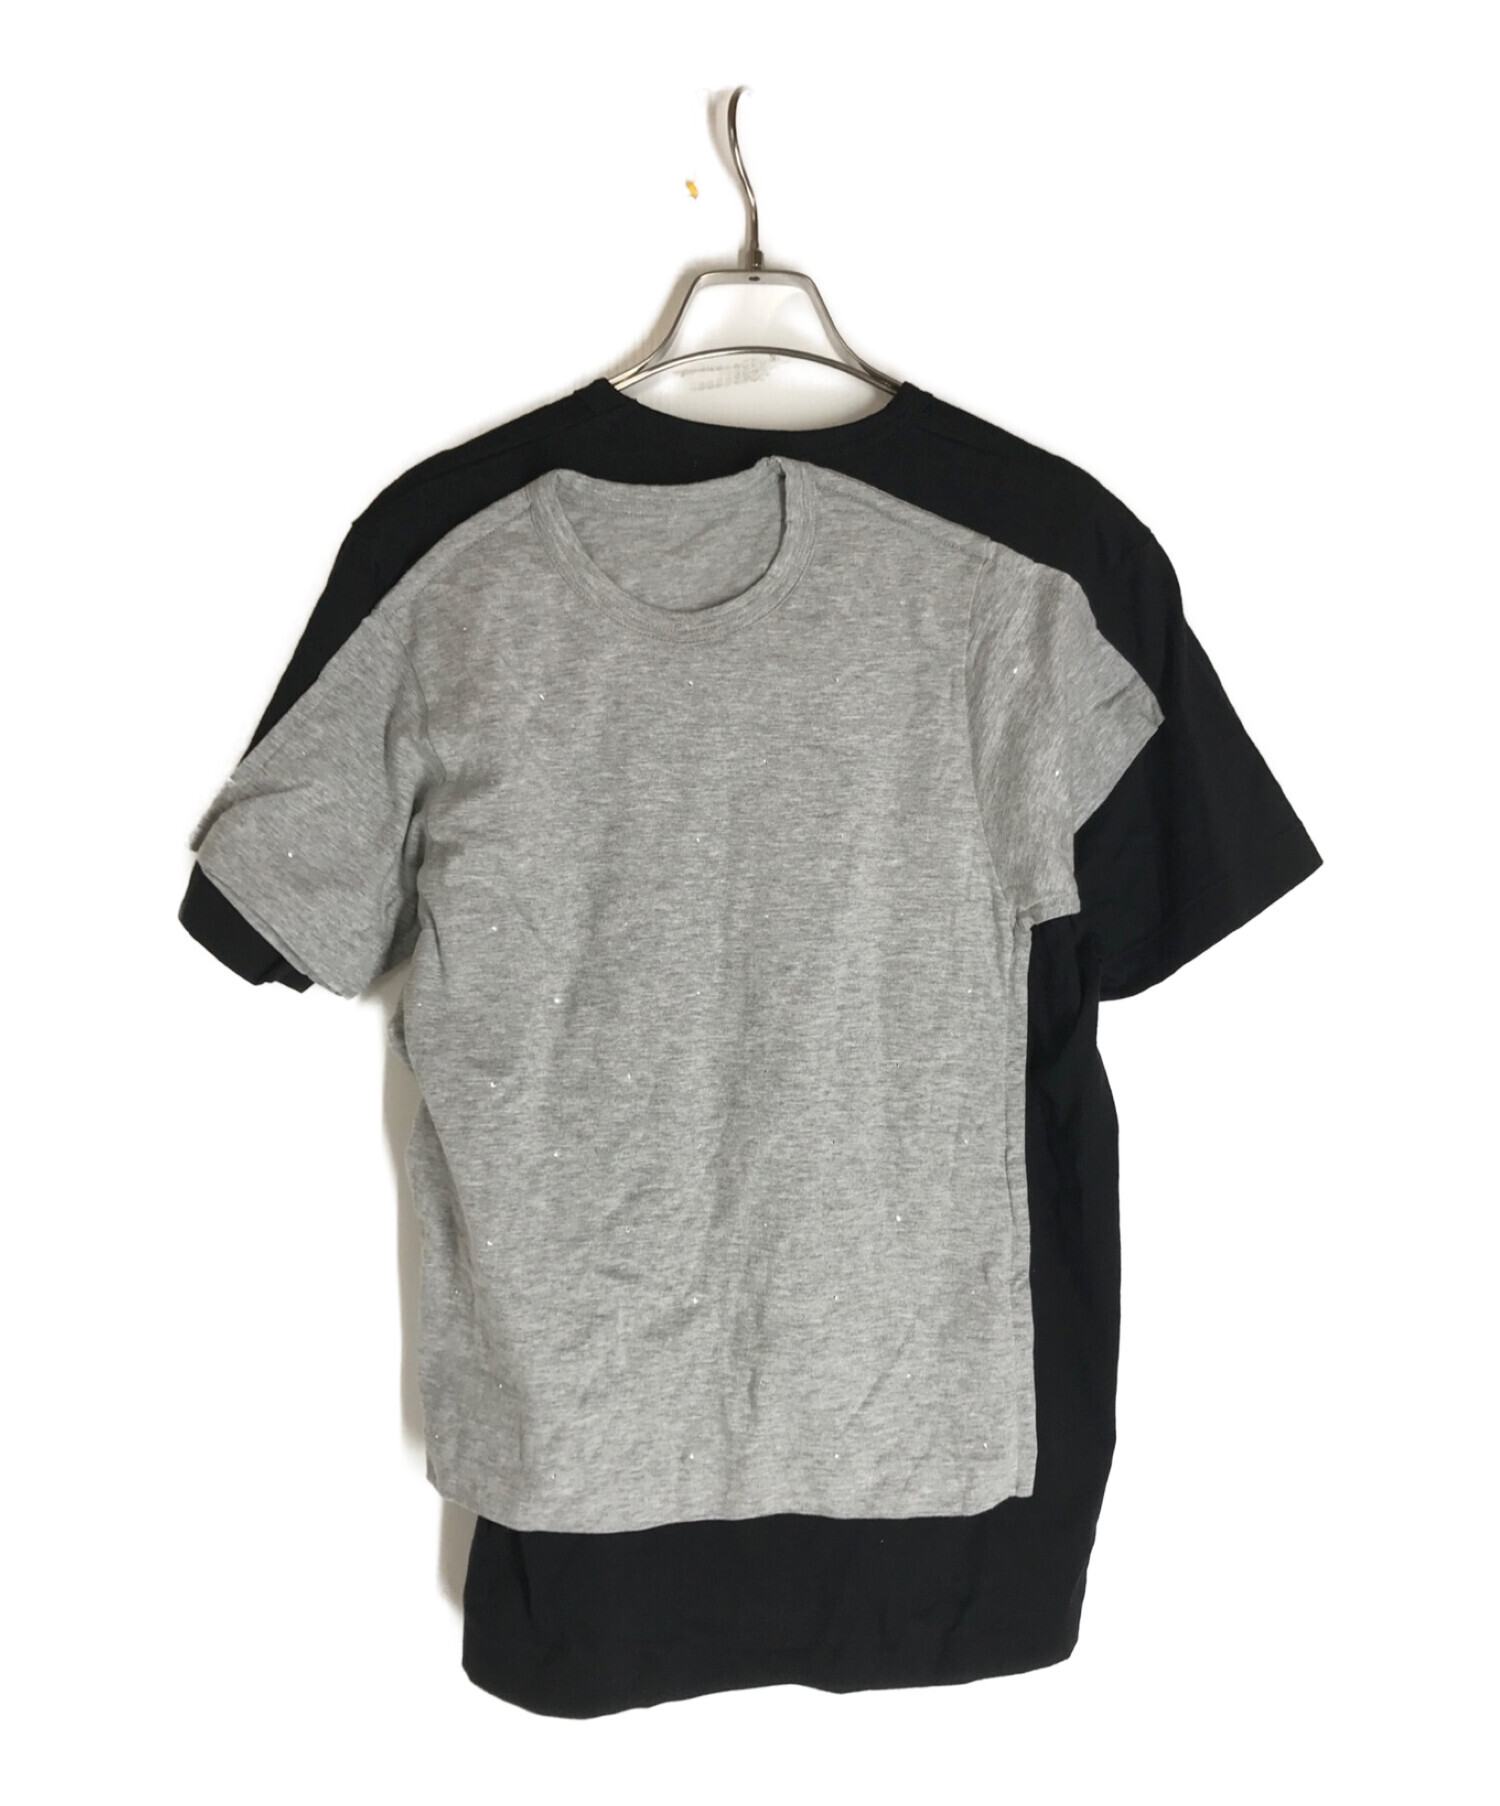 COMME des GARCONS (コムデギャルソン) ドッキングtシャツ グレー×ブラック サイズ:S